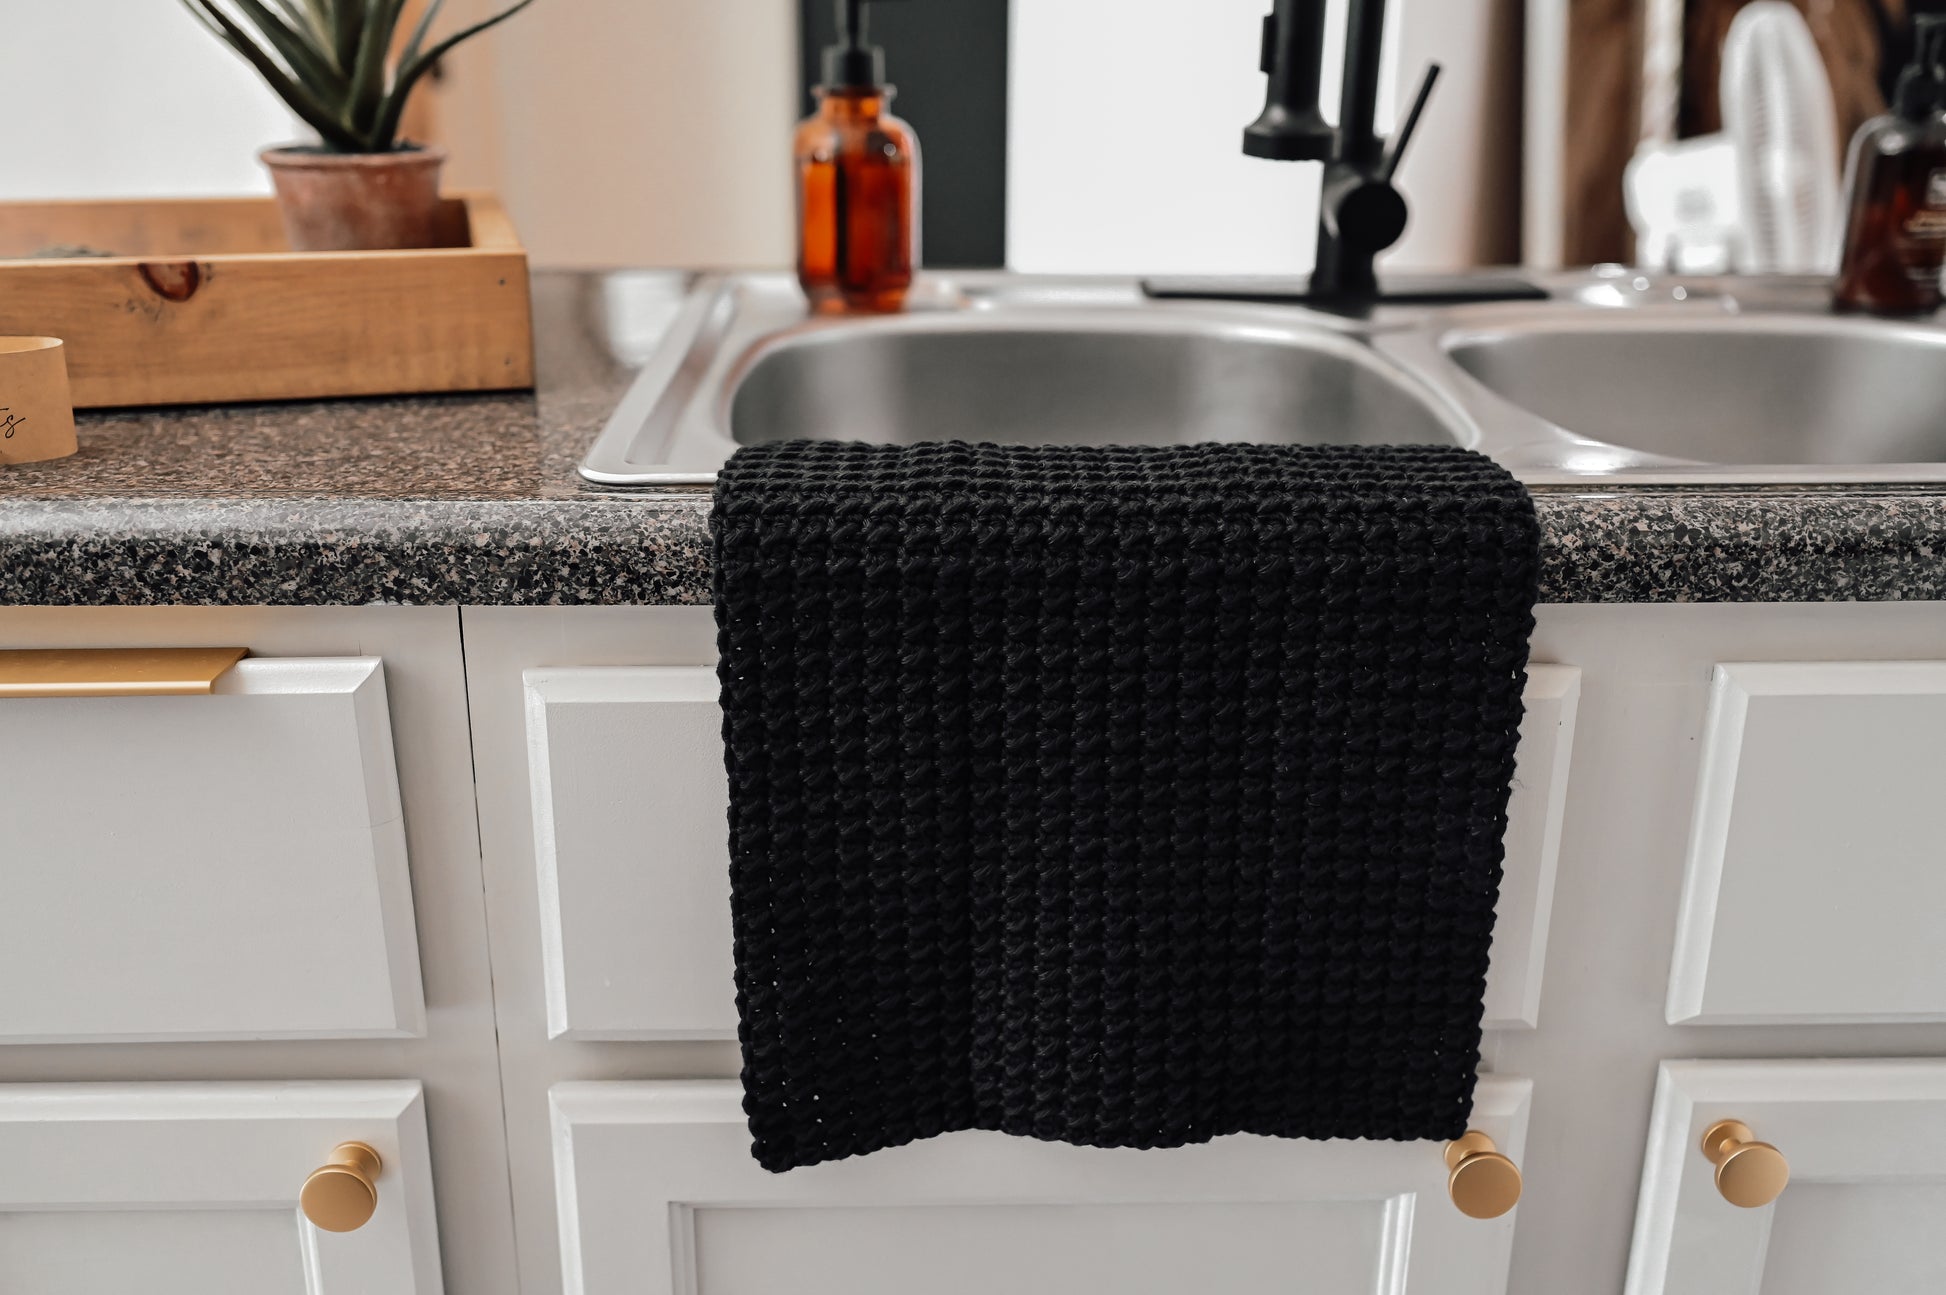 Black Kitchen & Dish Towels